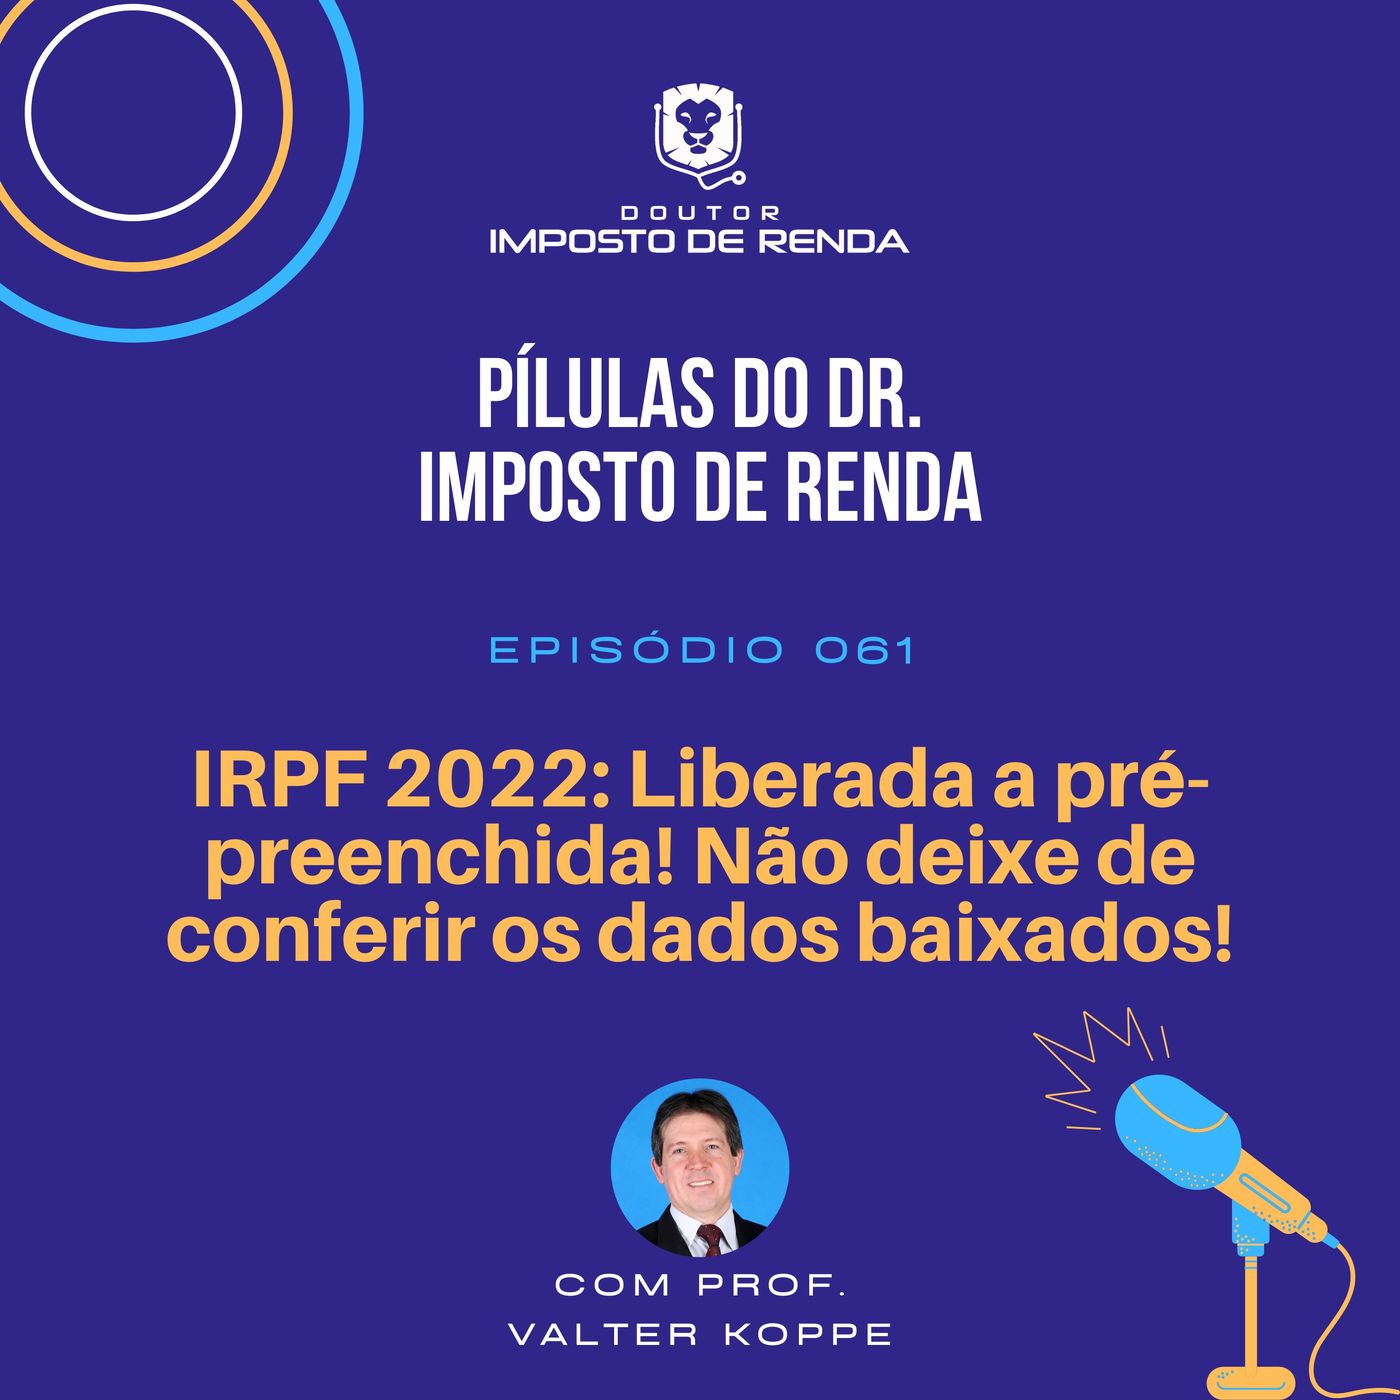 PDIR #061 – IRPF 2022: Liberada a pré-preenchida! Não deixe de conferir os dados baixados!